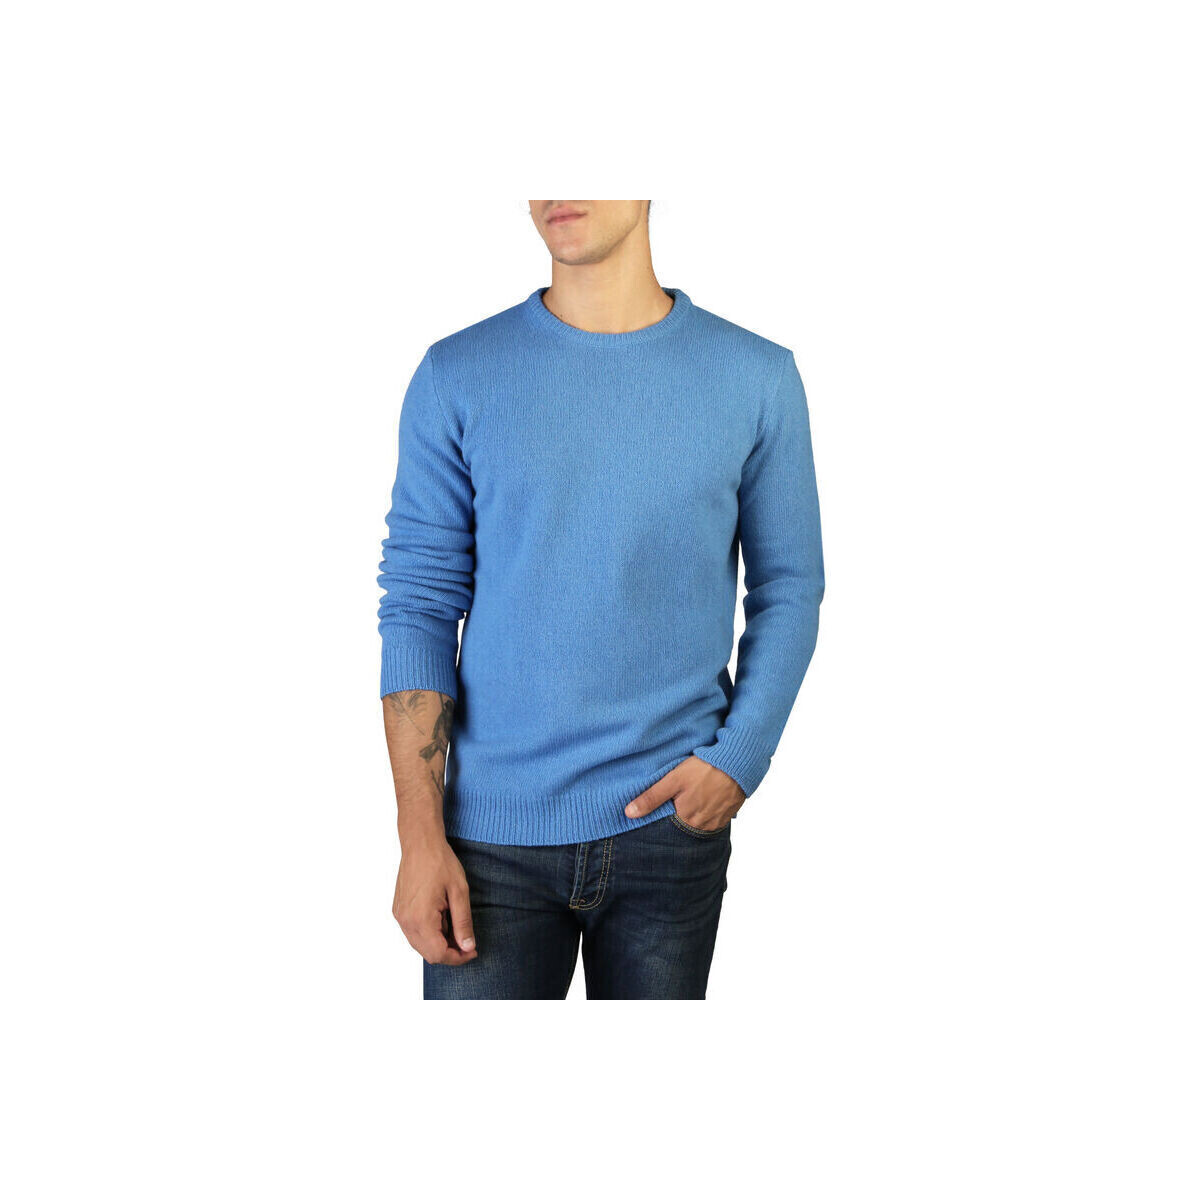 Textil Homem camisolas 100% Cashmere Jersey Azul